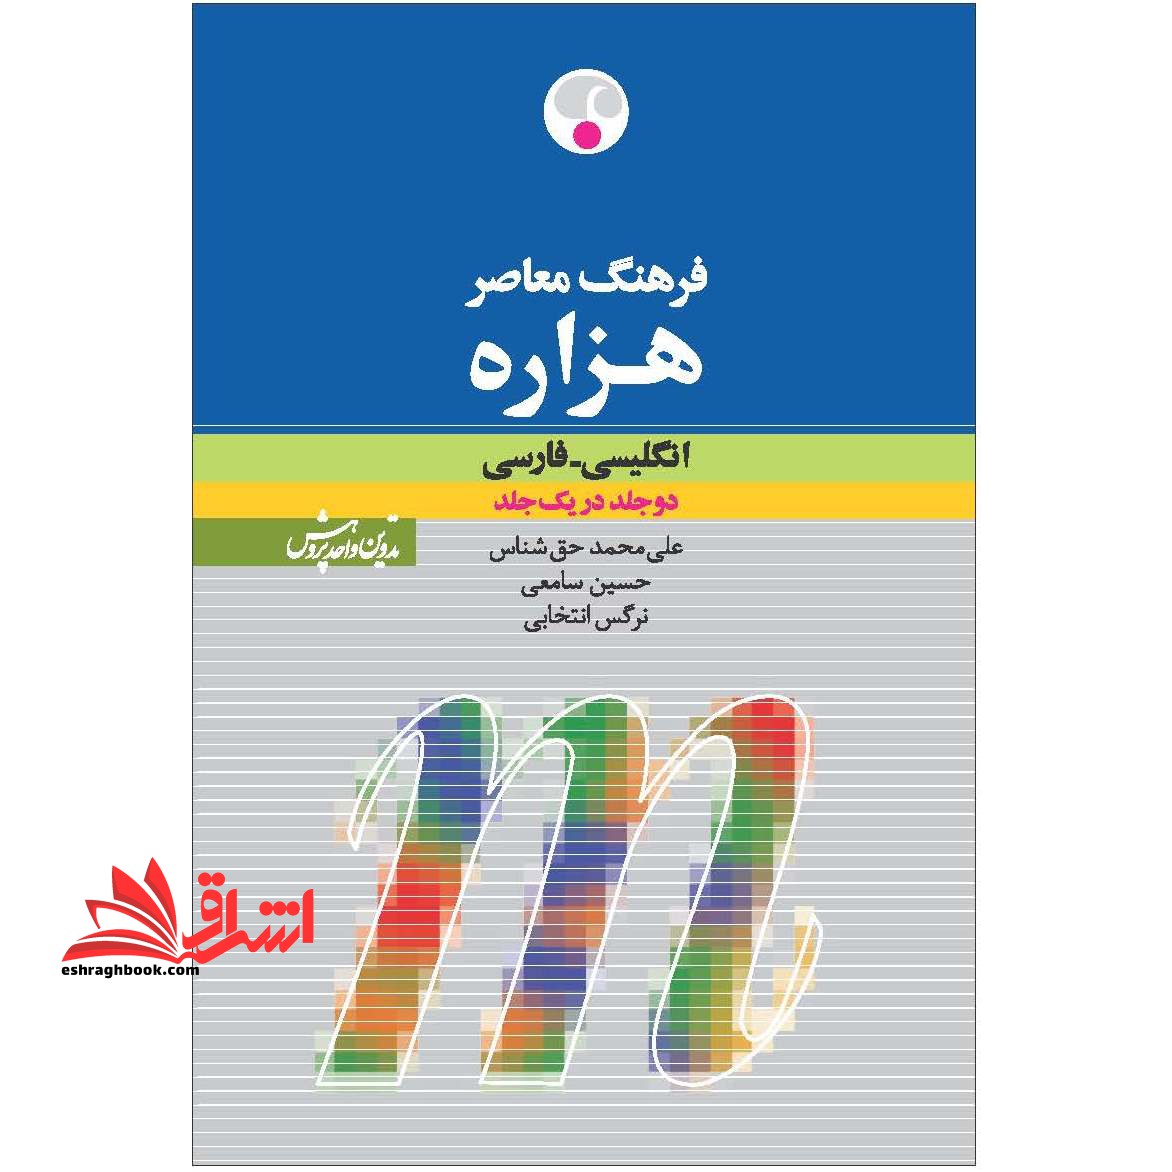 فرهنگ معاصر هزاره انگلیسی - فارسی:دو جلد در یک جلد